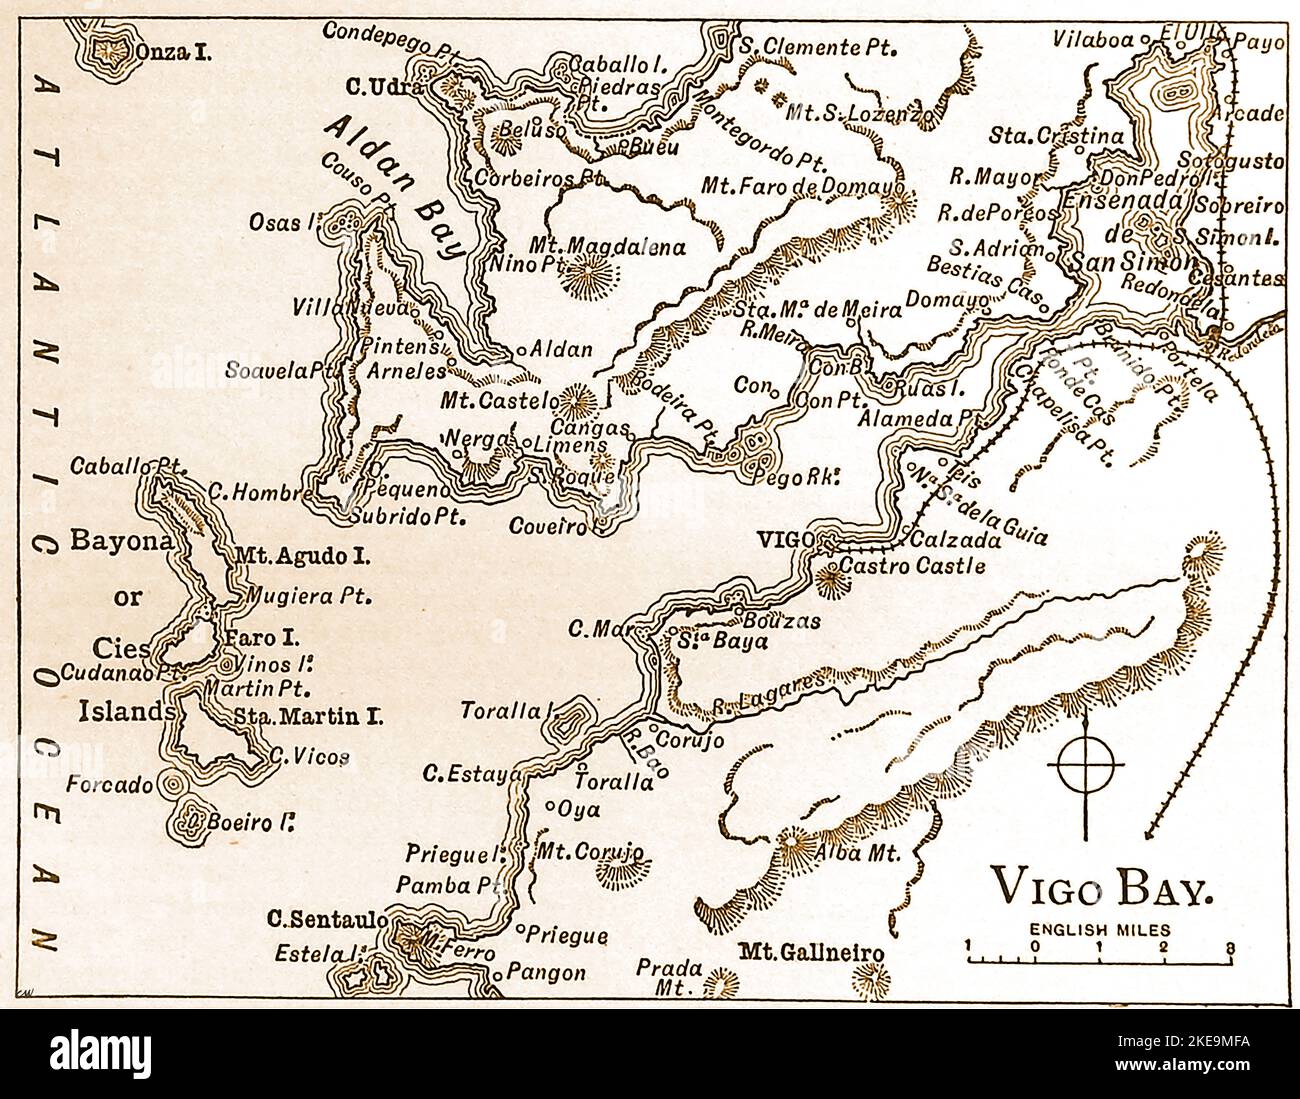 Eine alte Karte der Bucht von Vigo aus dem Jahr 1890, Spanien. Die Bucht von Vigo ist einer der Schauplätze von Jules Vernes Roman „20.000 Meilen unter dem Meer“. Historisch gesehen ist das Gebiet bekannt für die Schlacht an der Bucht von Vigo, auch bekannt als die Schlacht von Rande / Batalla de Rande, die am 23. Oktober 1702 während der ersten Jahre des spanischen Erbfolgekrieges auf See ausgetragen wurde. --- UN mapa tiguo de 1890 de la Bahía de Vigo, España. La Bahía de Vigo es uno de los escenarios de la novela de Julio Verne, Veinte mil leguas de viaje submarino y Batalla de Rande (1702), Stockfoto